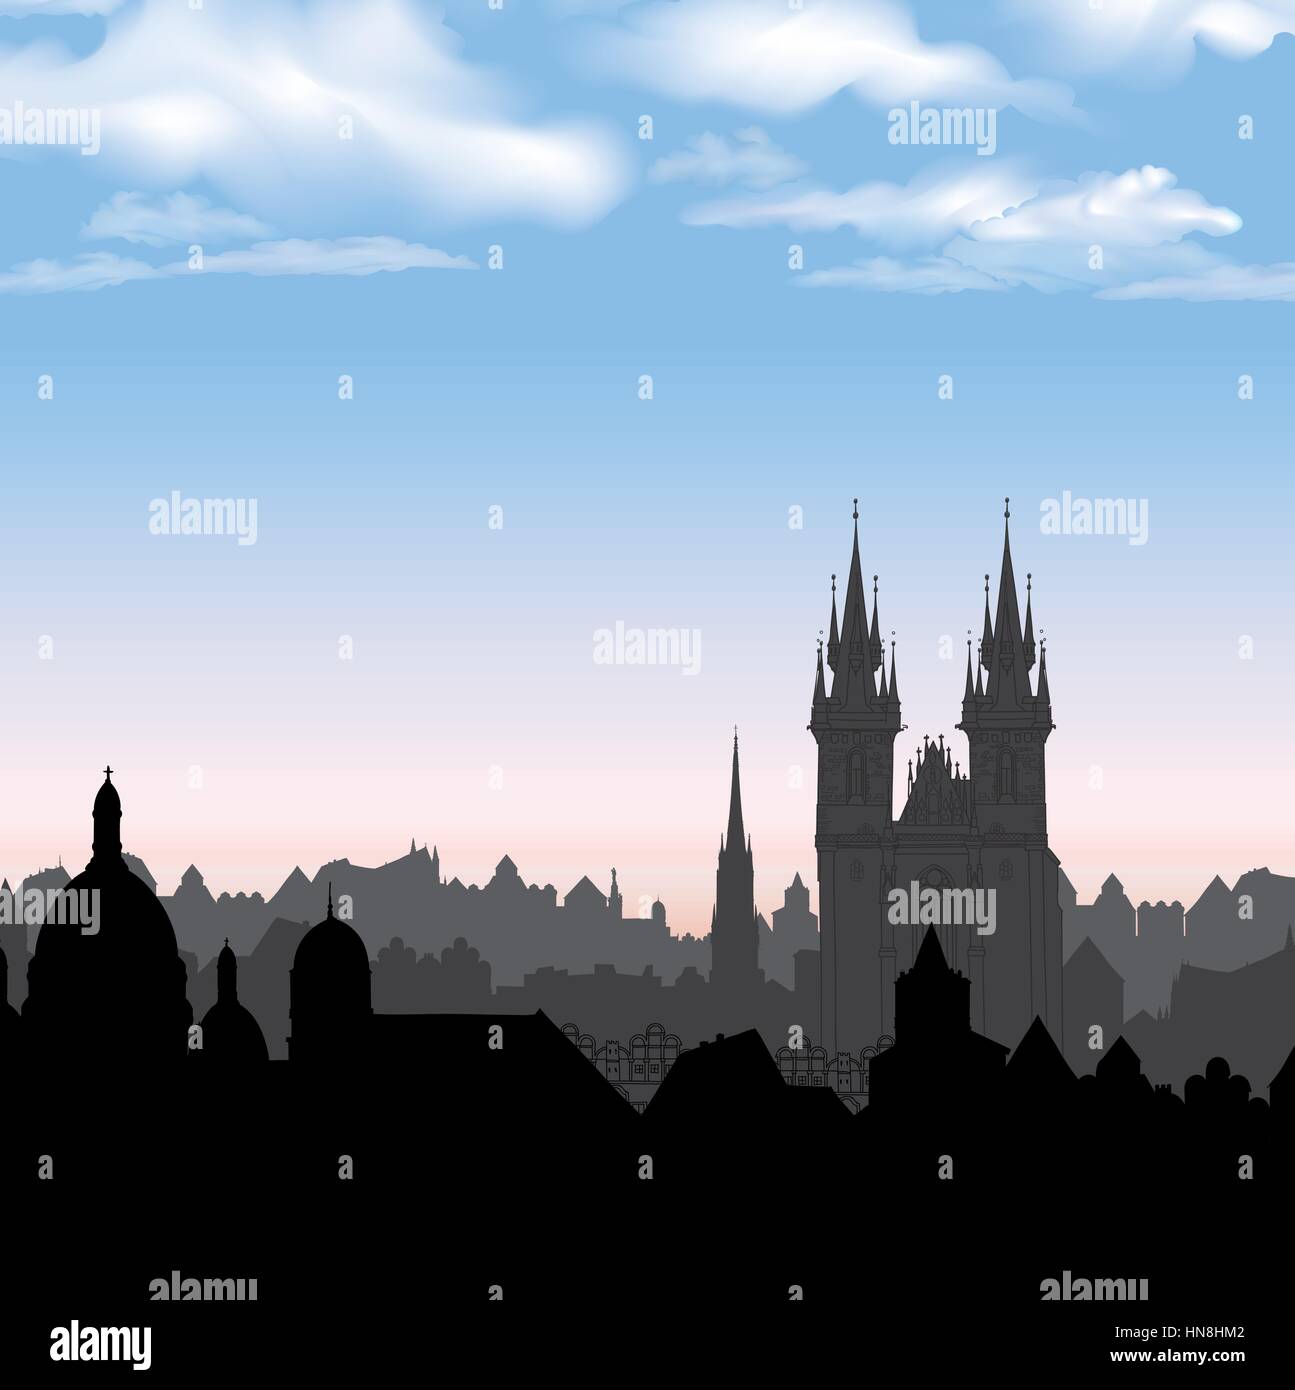 Die Altstadt von Prag, tschechische Republik. Stadtbild in der alten europäischen Stadt mit Turm im Hintergrund. Historische Stadt Straße. Prag bakcground. Stock Vektor